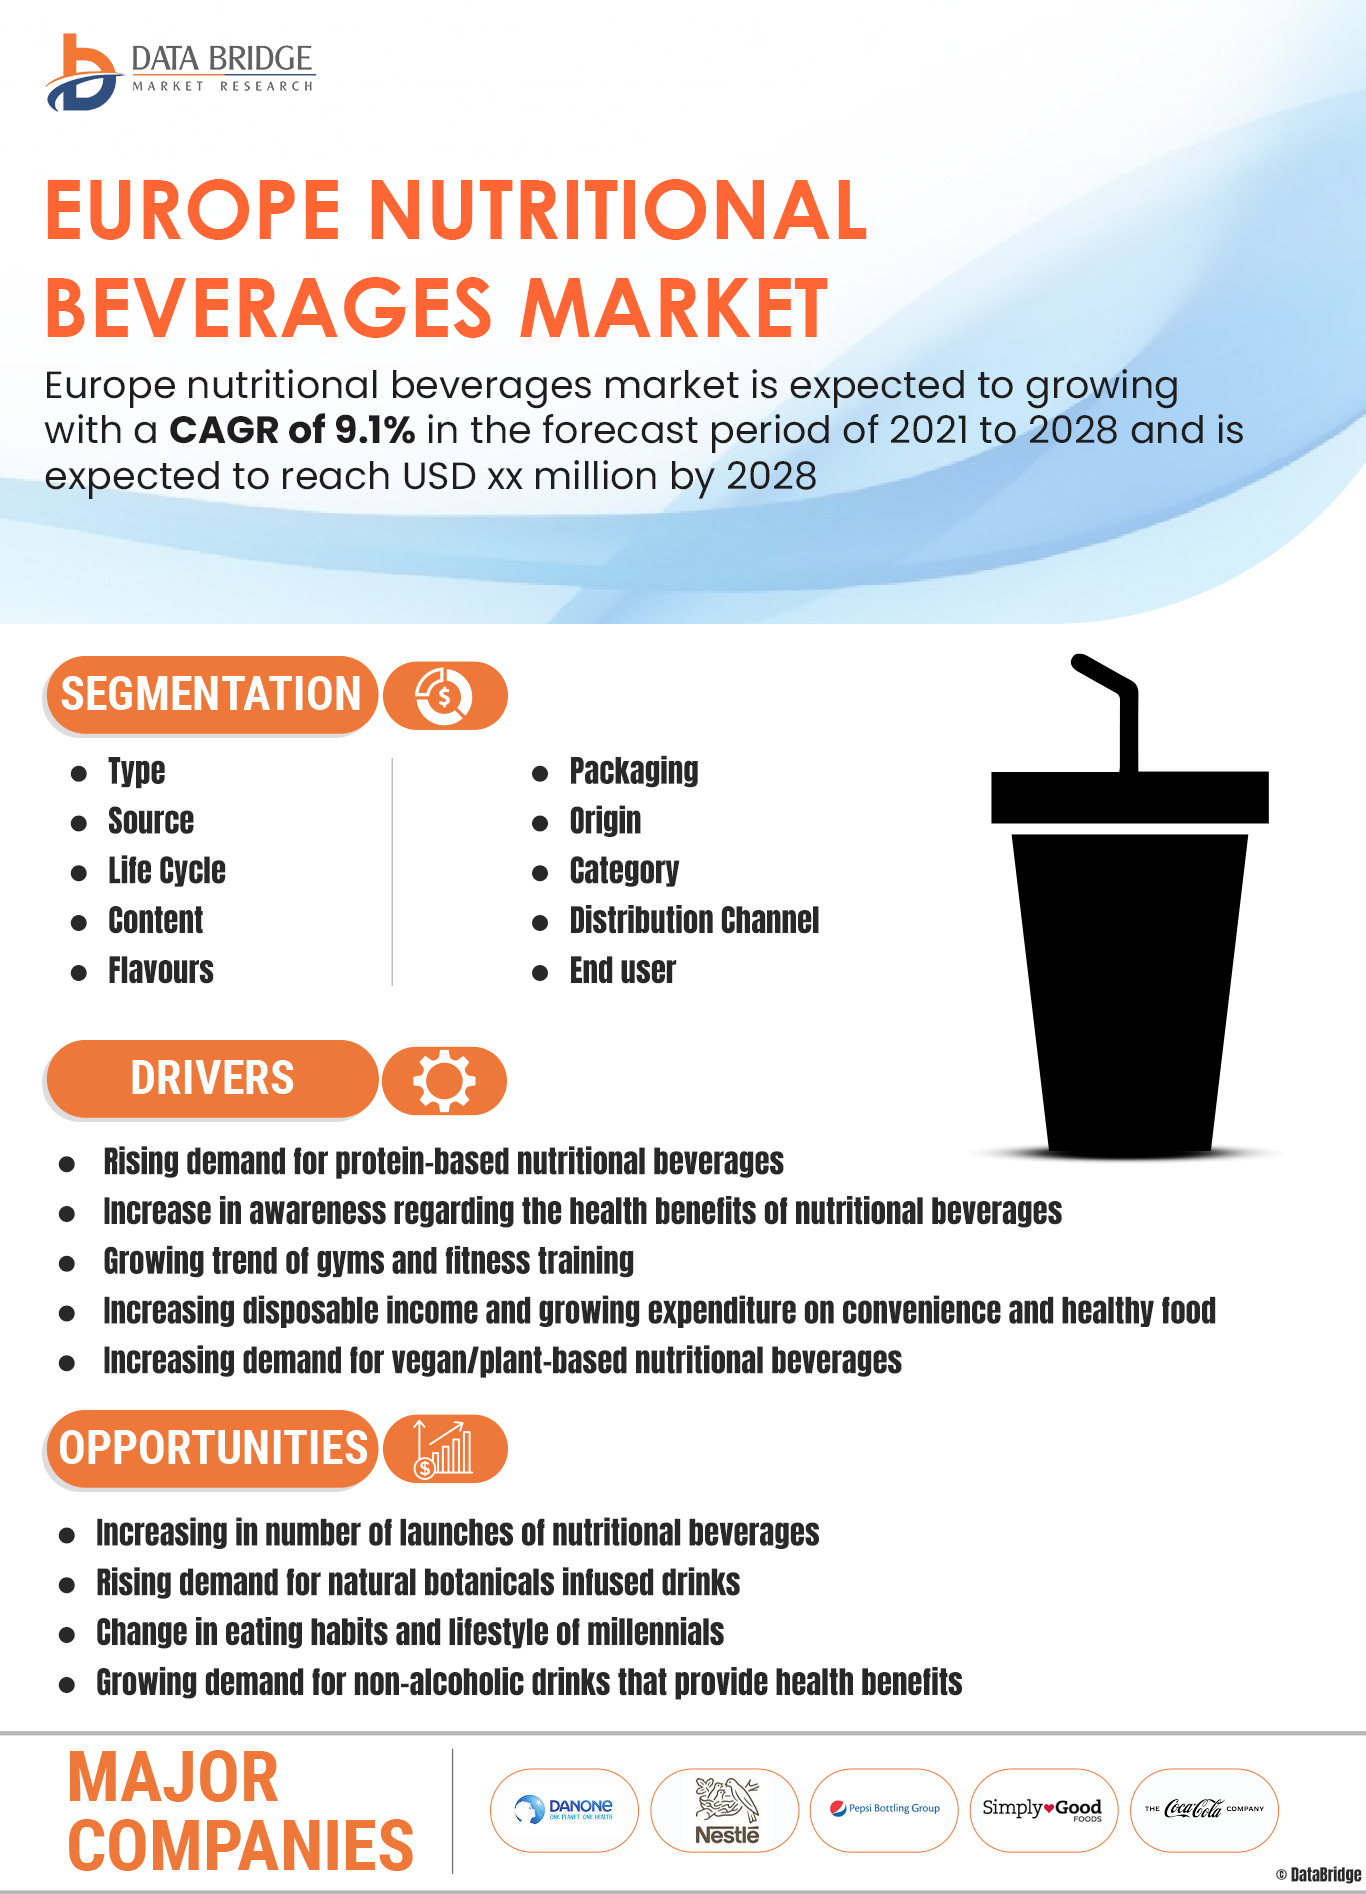 Europe Nutritional Beverages Market